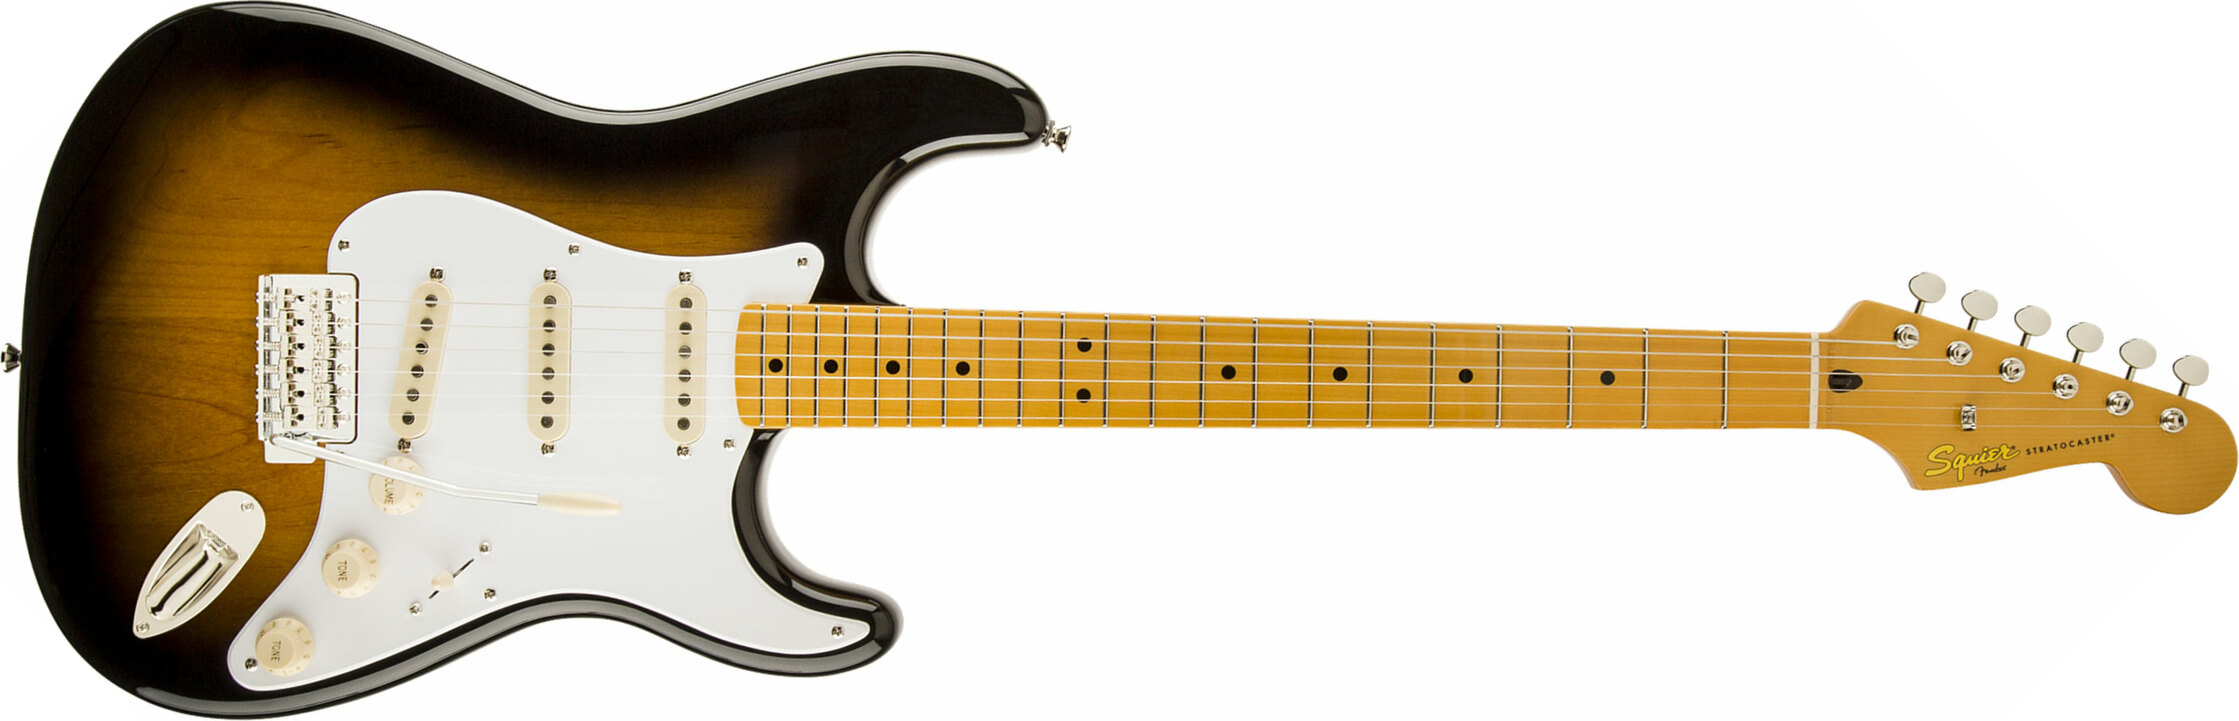 Squier Strat Classic Vibe '50s Mn - 2-color Sunburst - Str shape electric guitar - Main picture